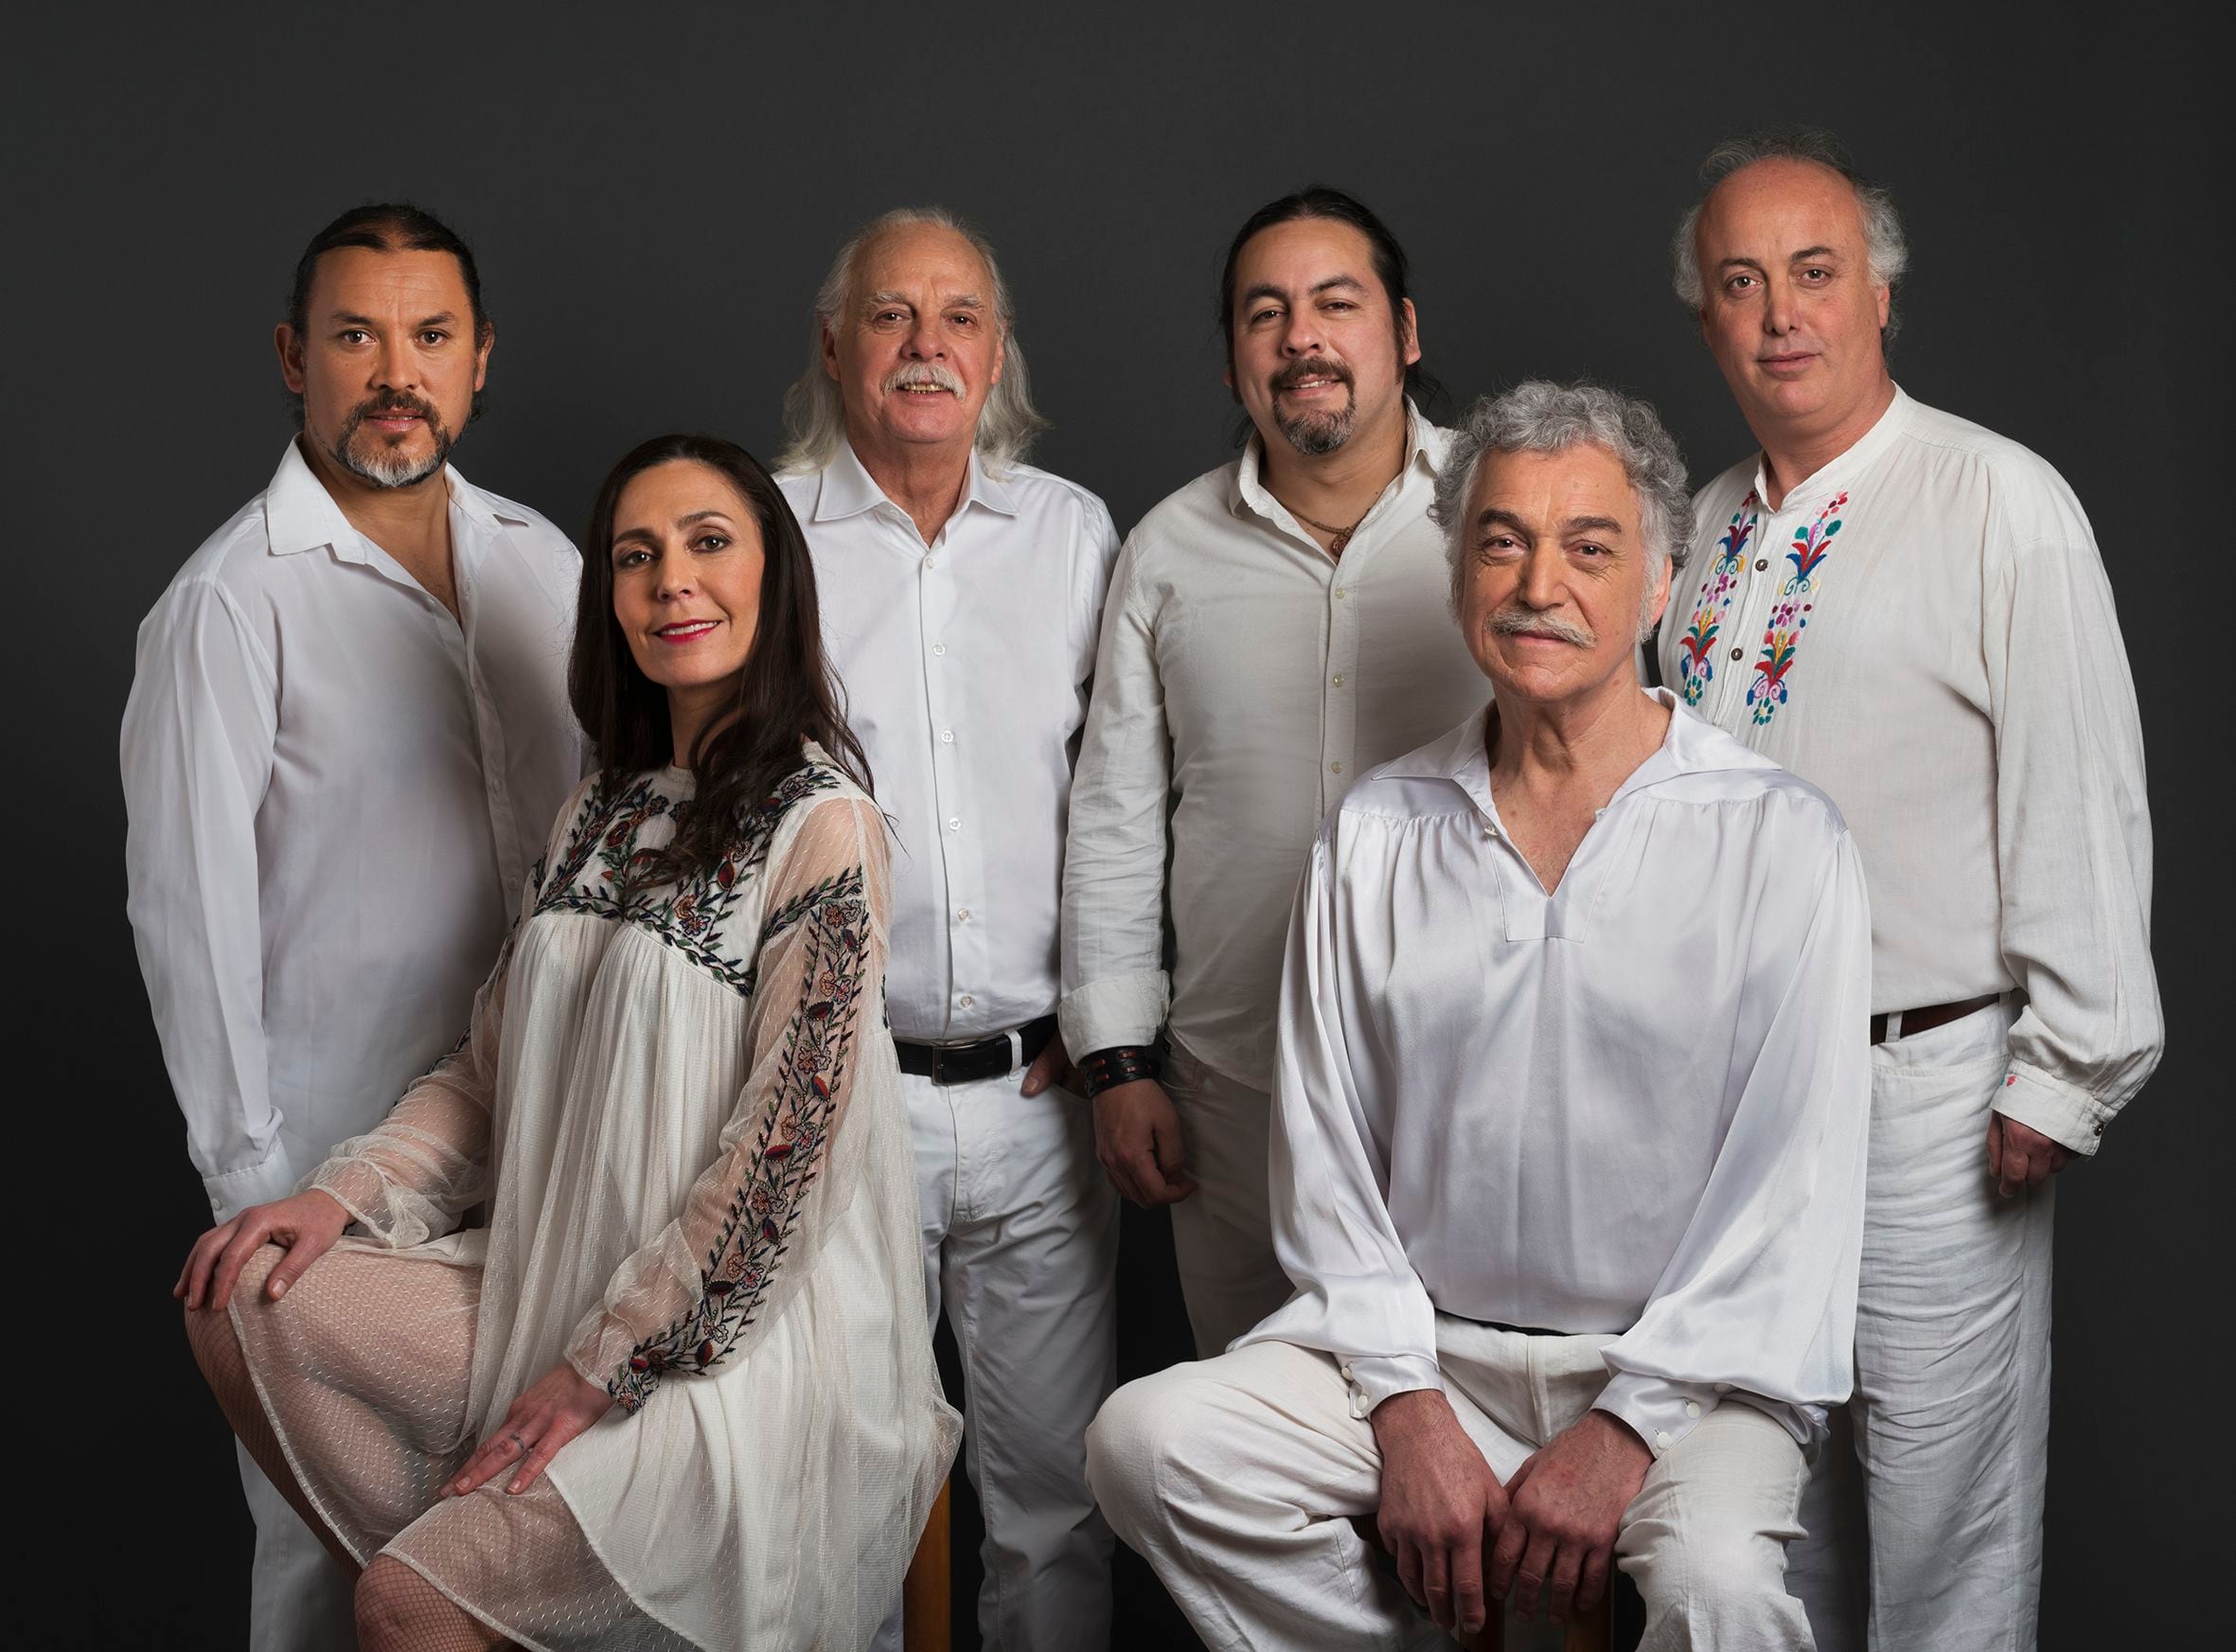 “todos juntos” de los jaivas encabeza el ranking como la mejor canción del rock chileno